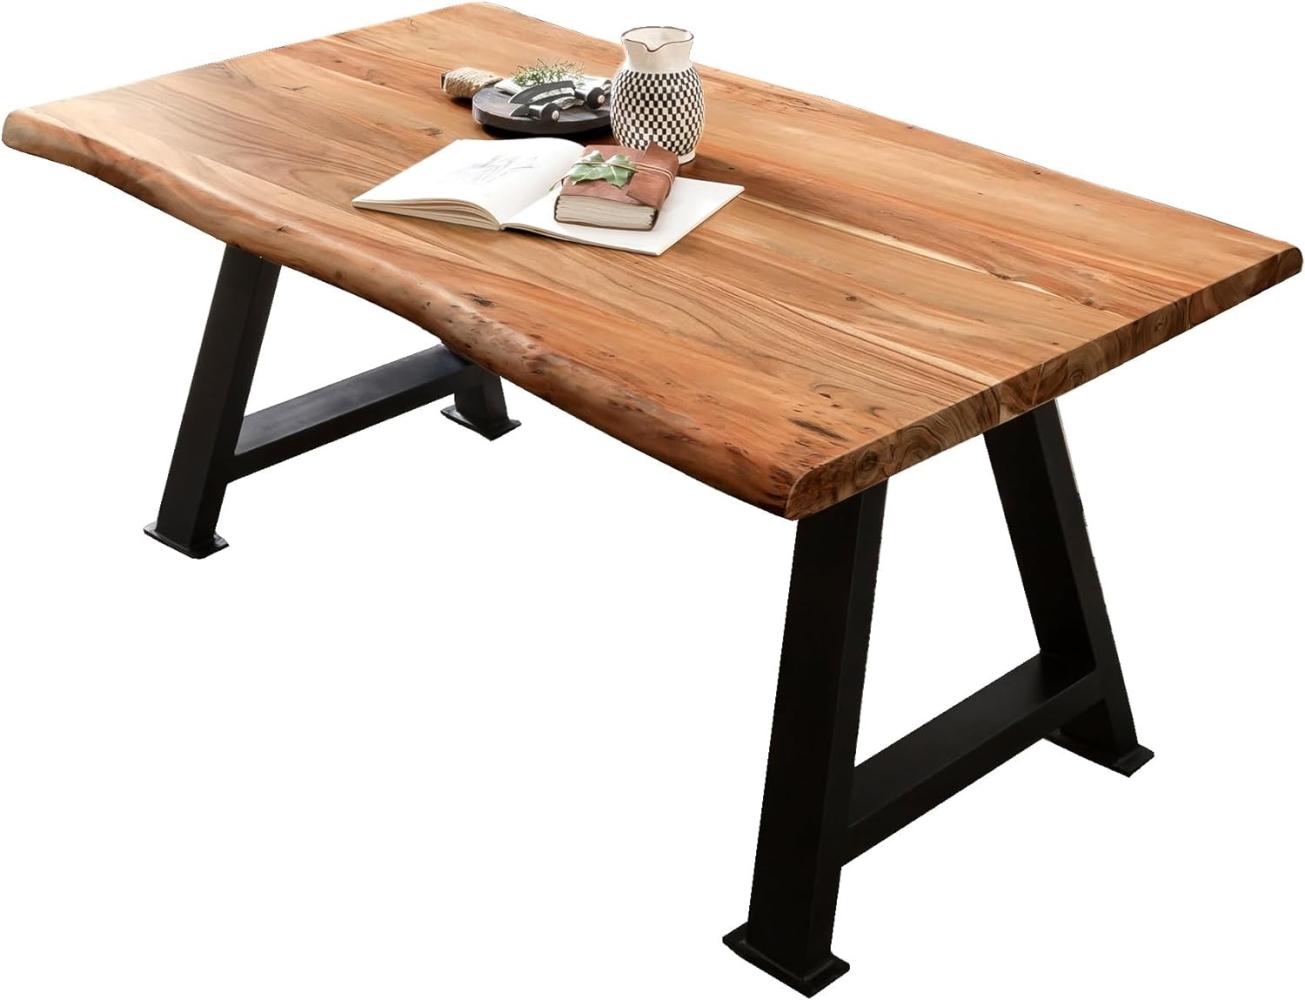 Tisch 220x100 Akazie Metall Holztisch Esstisch Speisetisch Küchentisch Esszimmer Bild 1